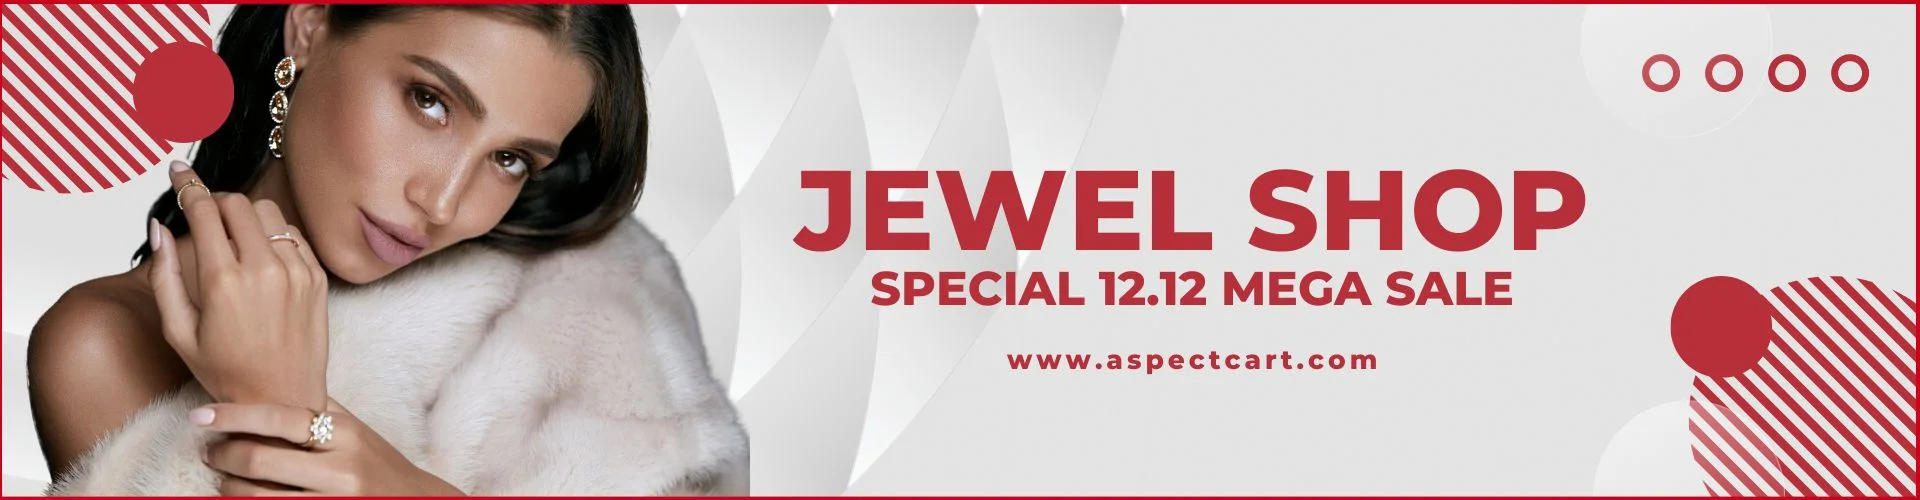 Banner anunciando la colección de joyas en una tienda de joyería en línea